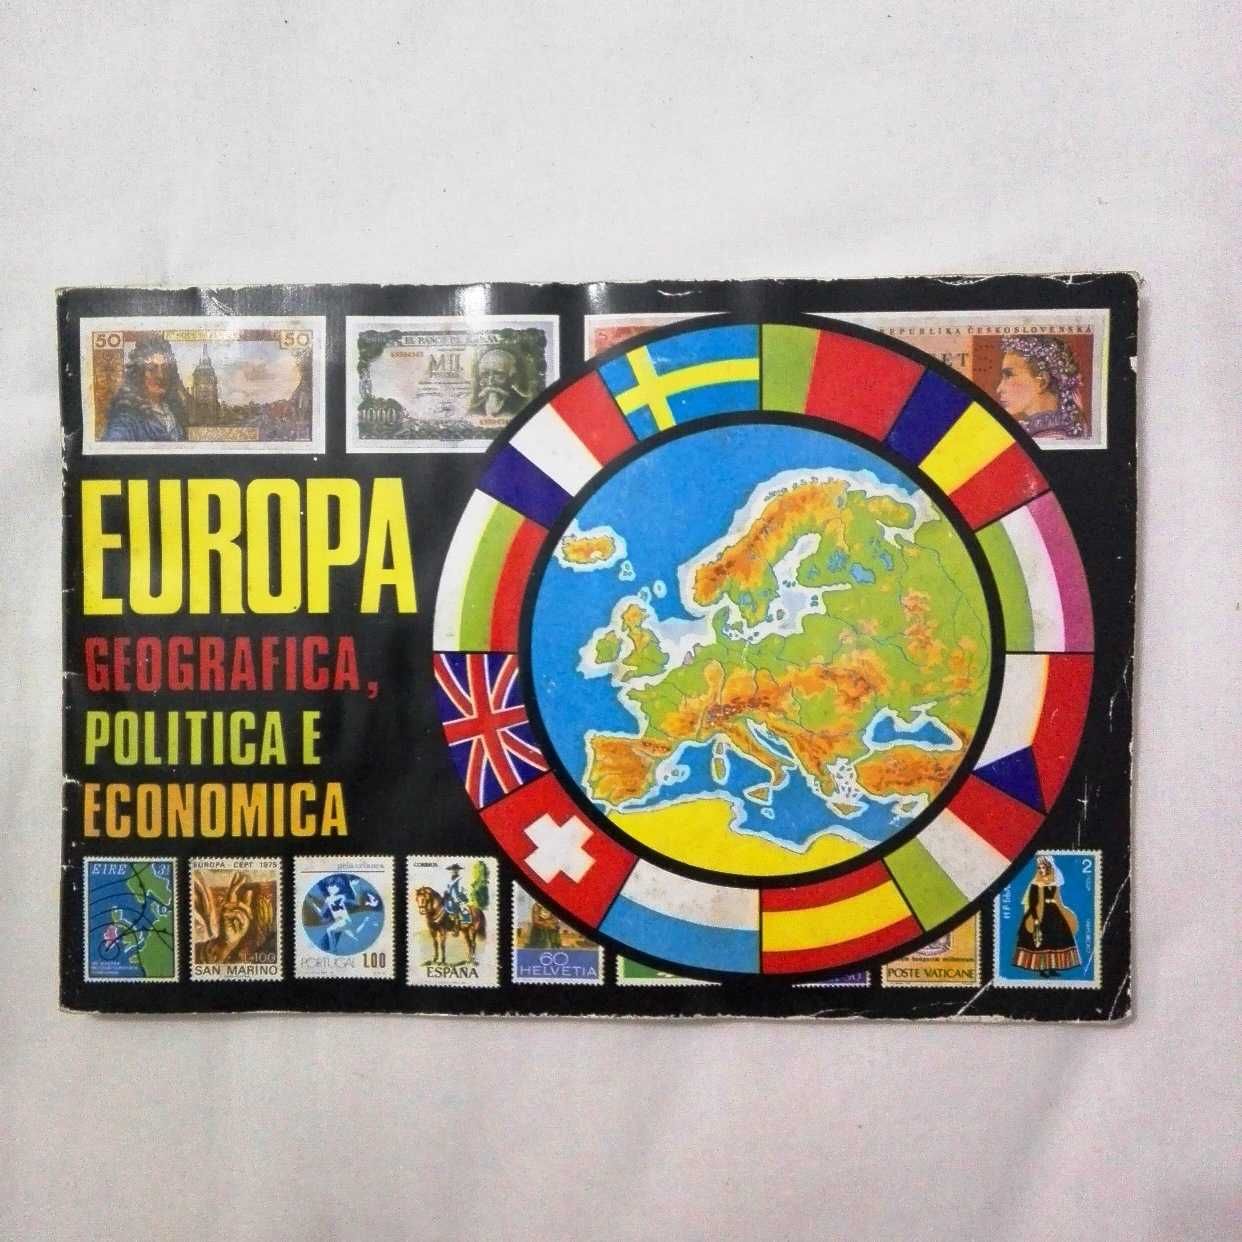 Caderneta Europa Geográfica, Politica e Económica - Pastilhas Piratas